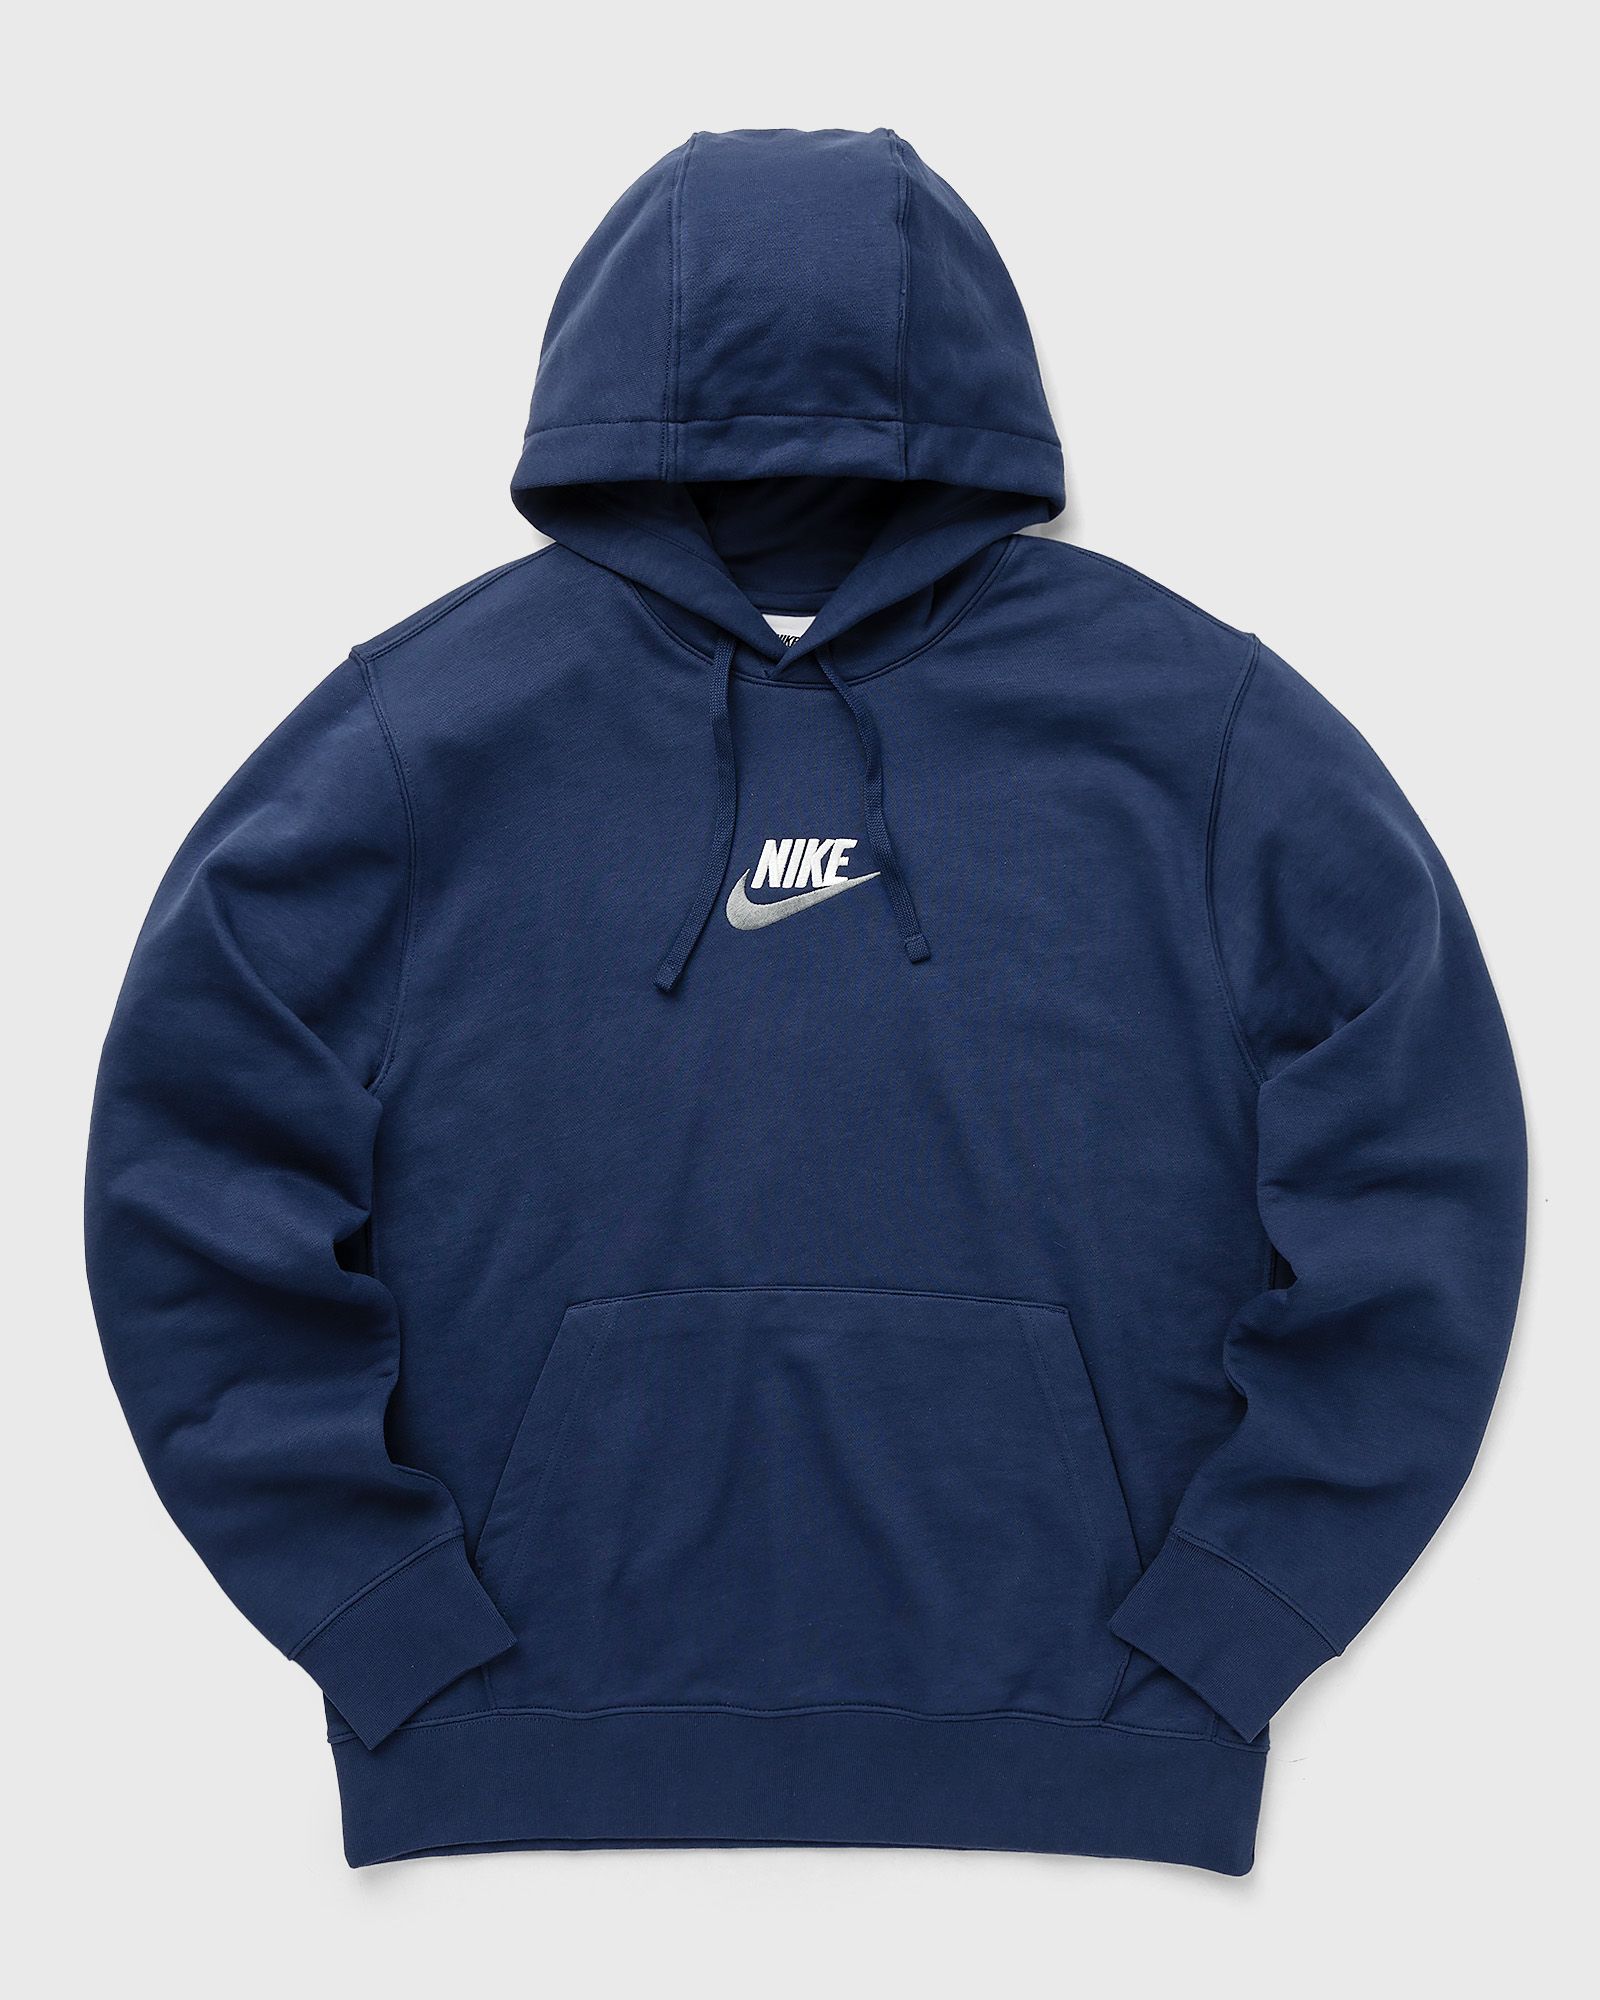 Nike - club french terry hoodie men hoodies blue in größe:m